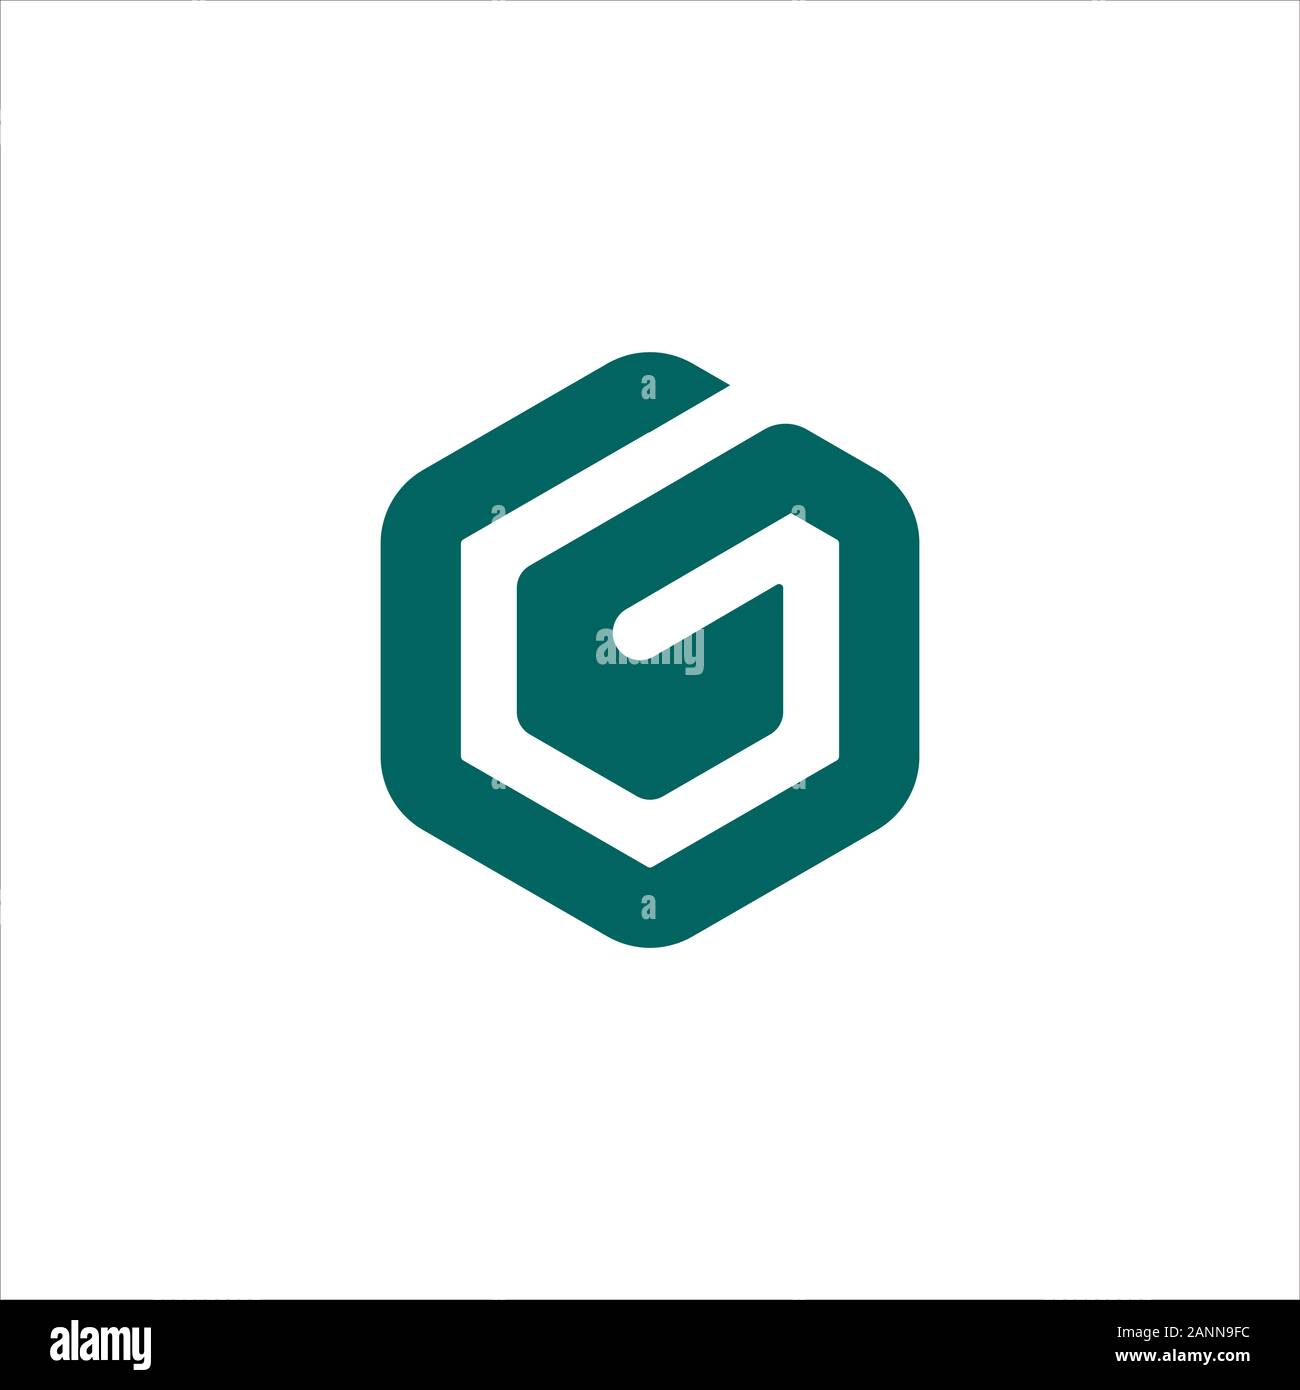 initial letter gb or bg logo vector design Stock Vector